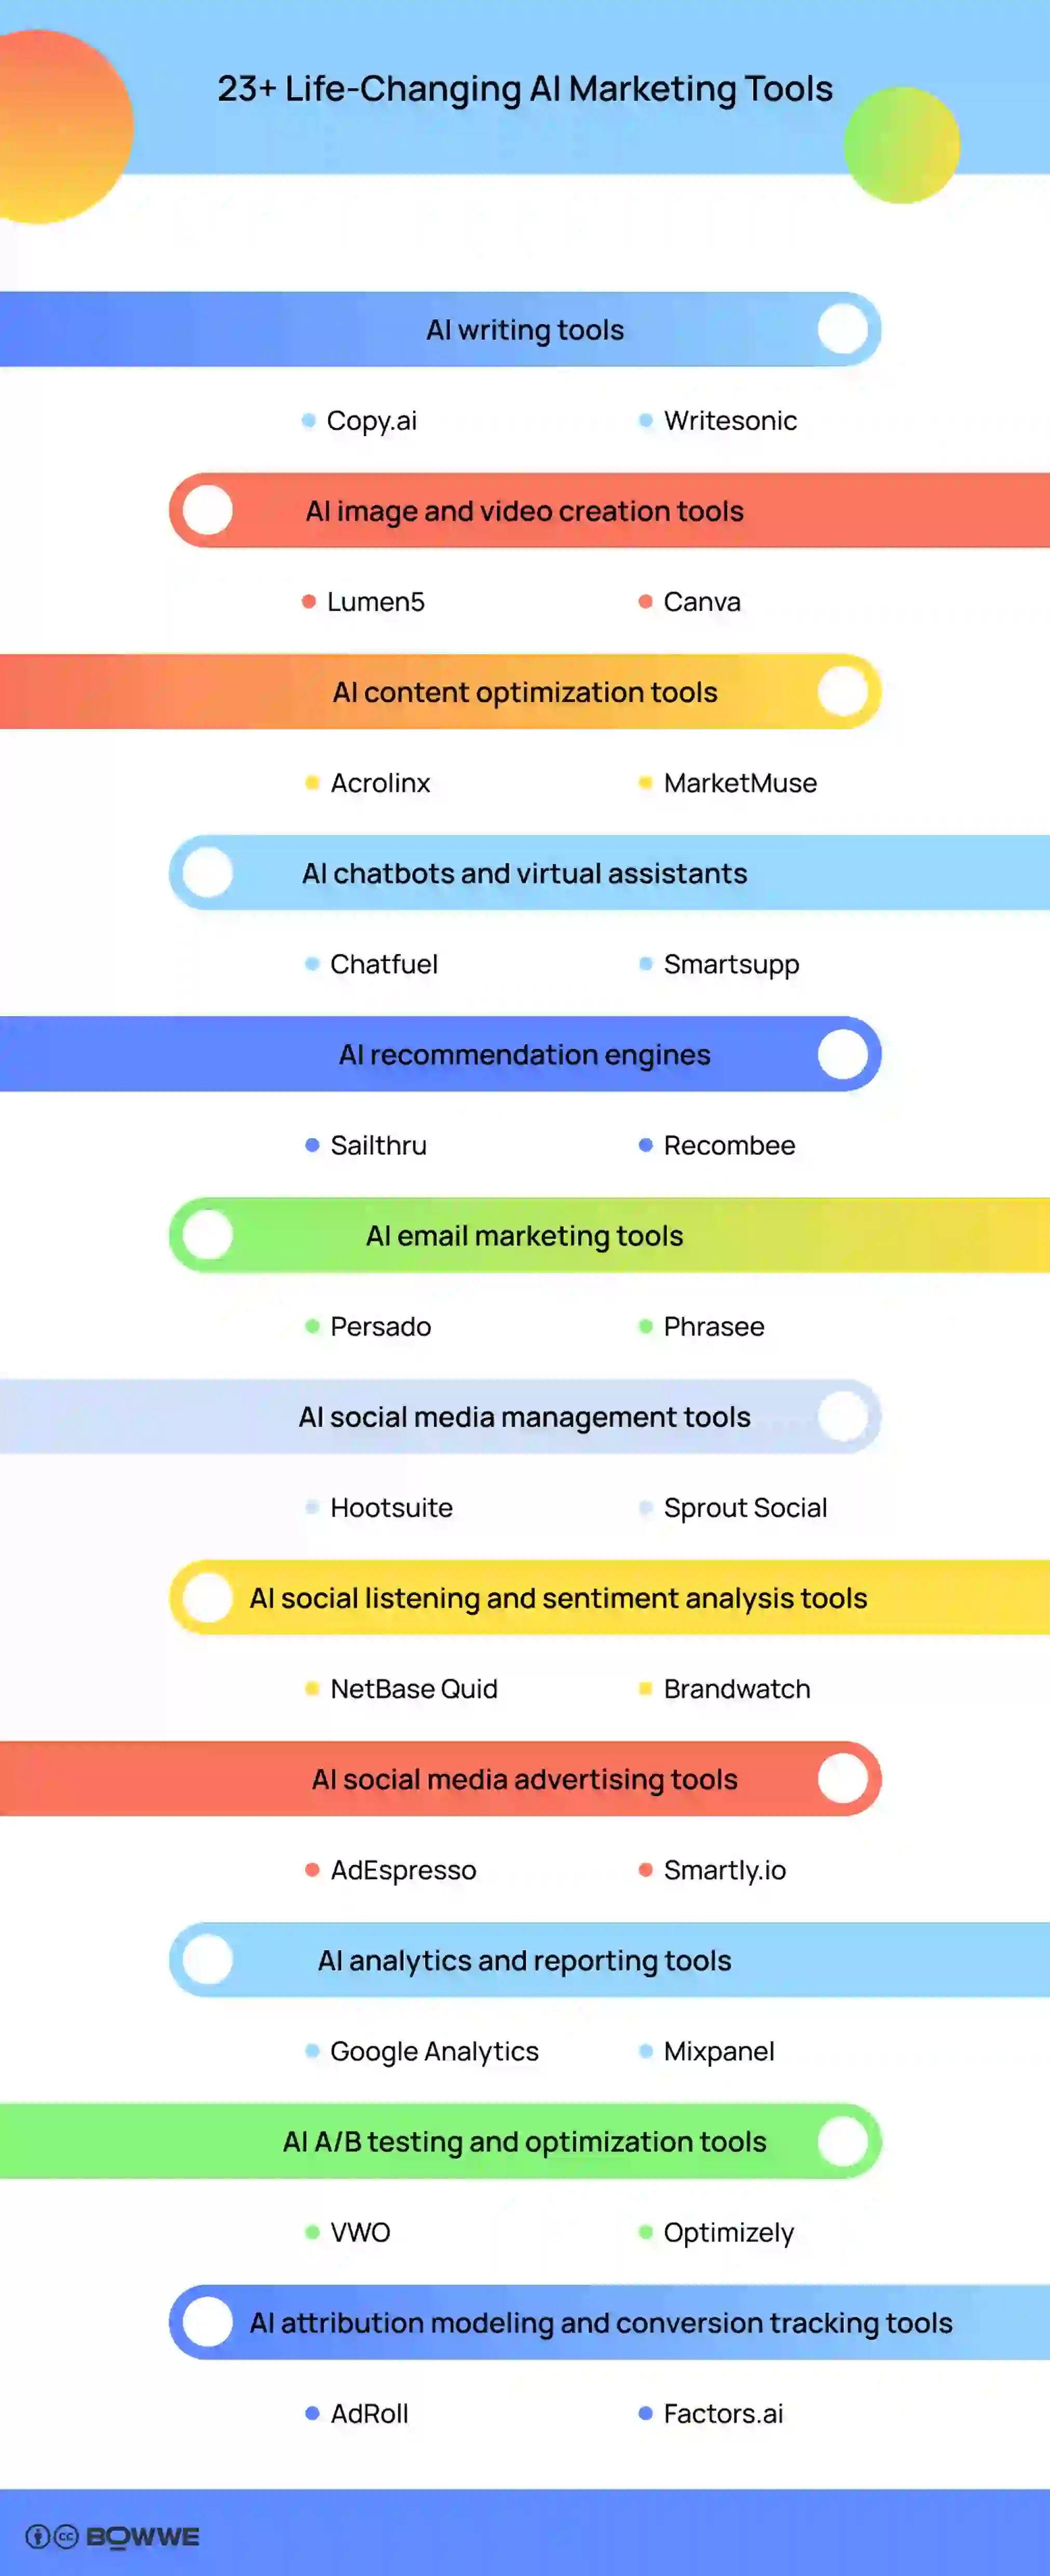 Mais de 23 ferramentas de marketing de IA que mudam vidas